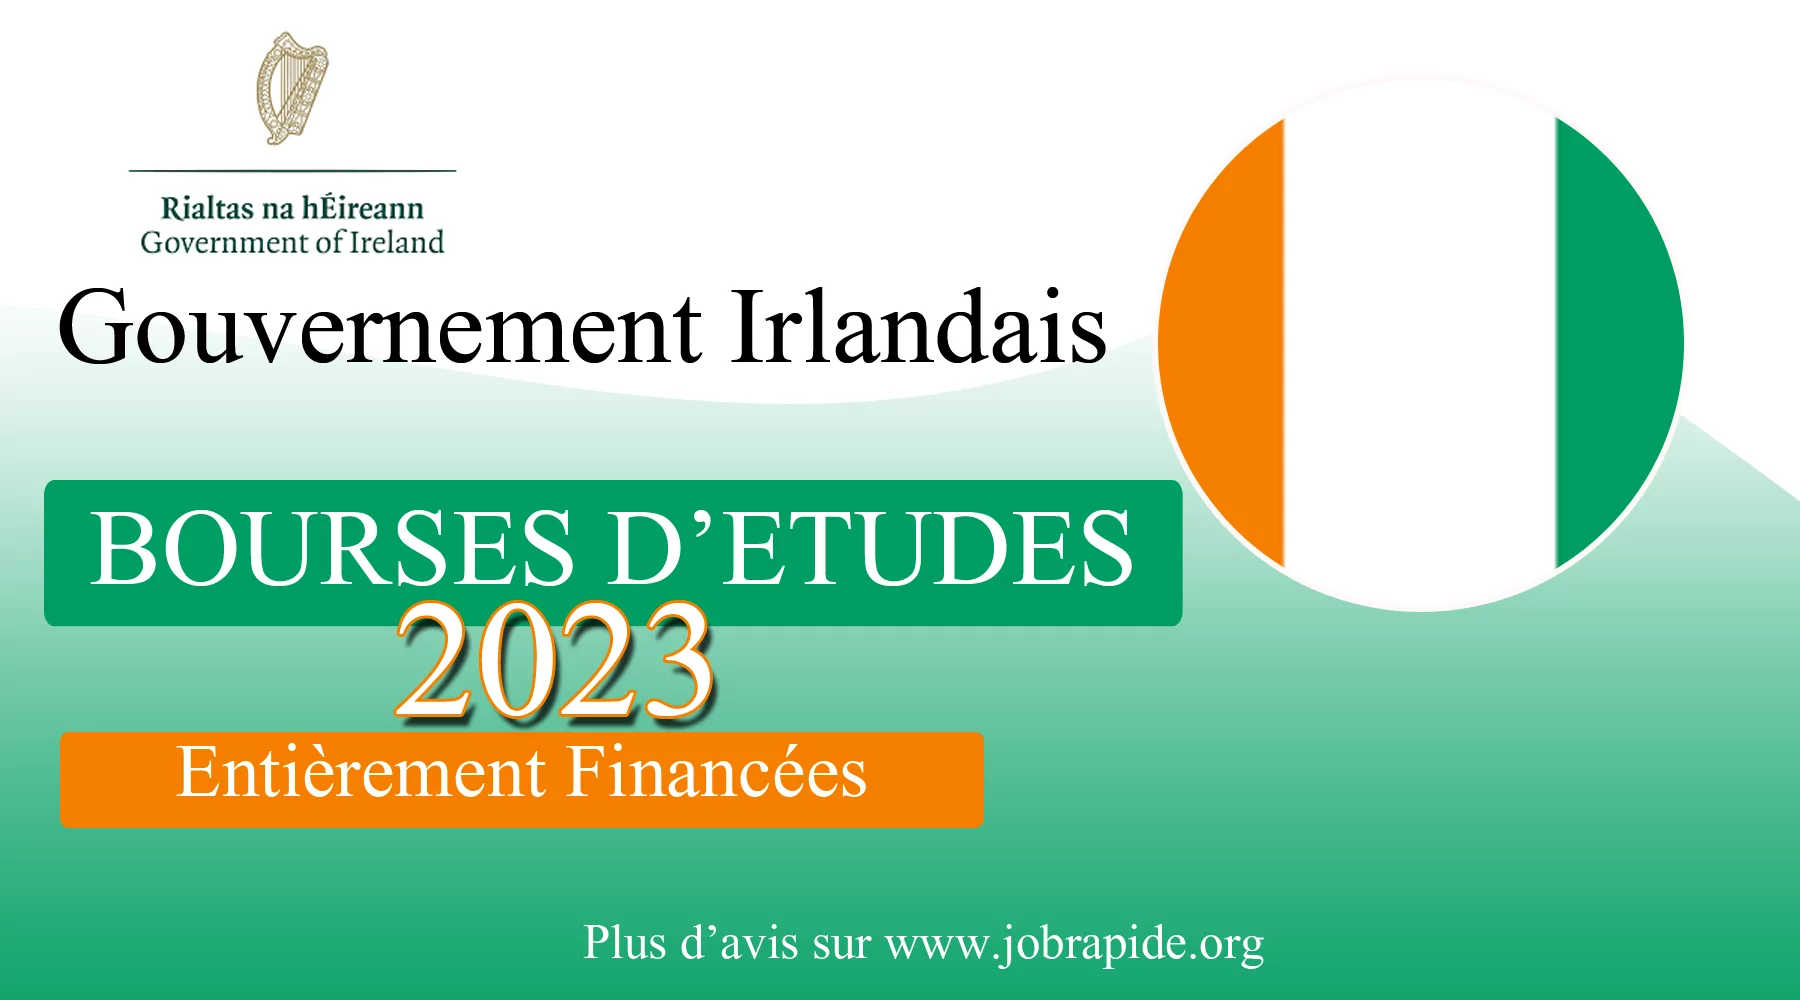 Bourses d’études internationales du gouvernement irlandais 2023 (Entièrement Financées)